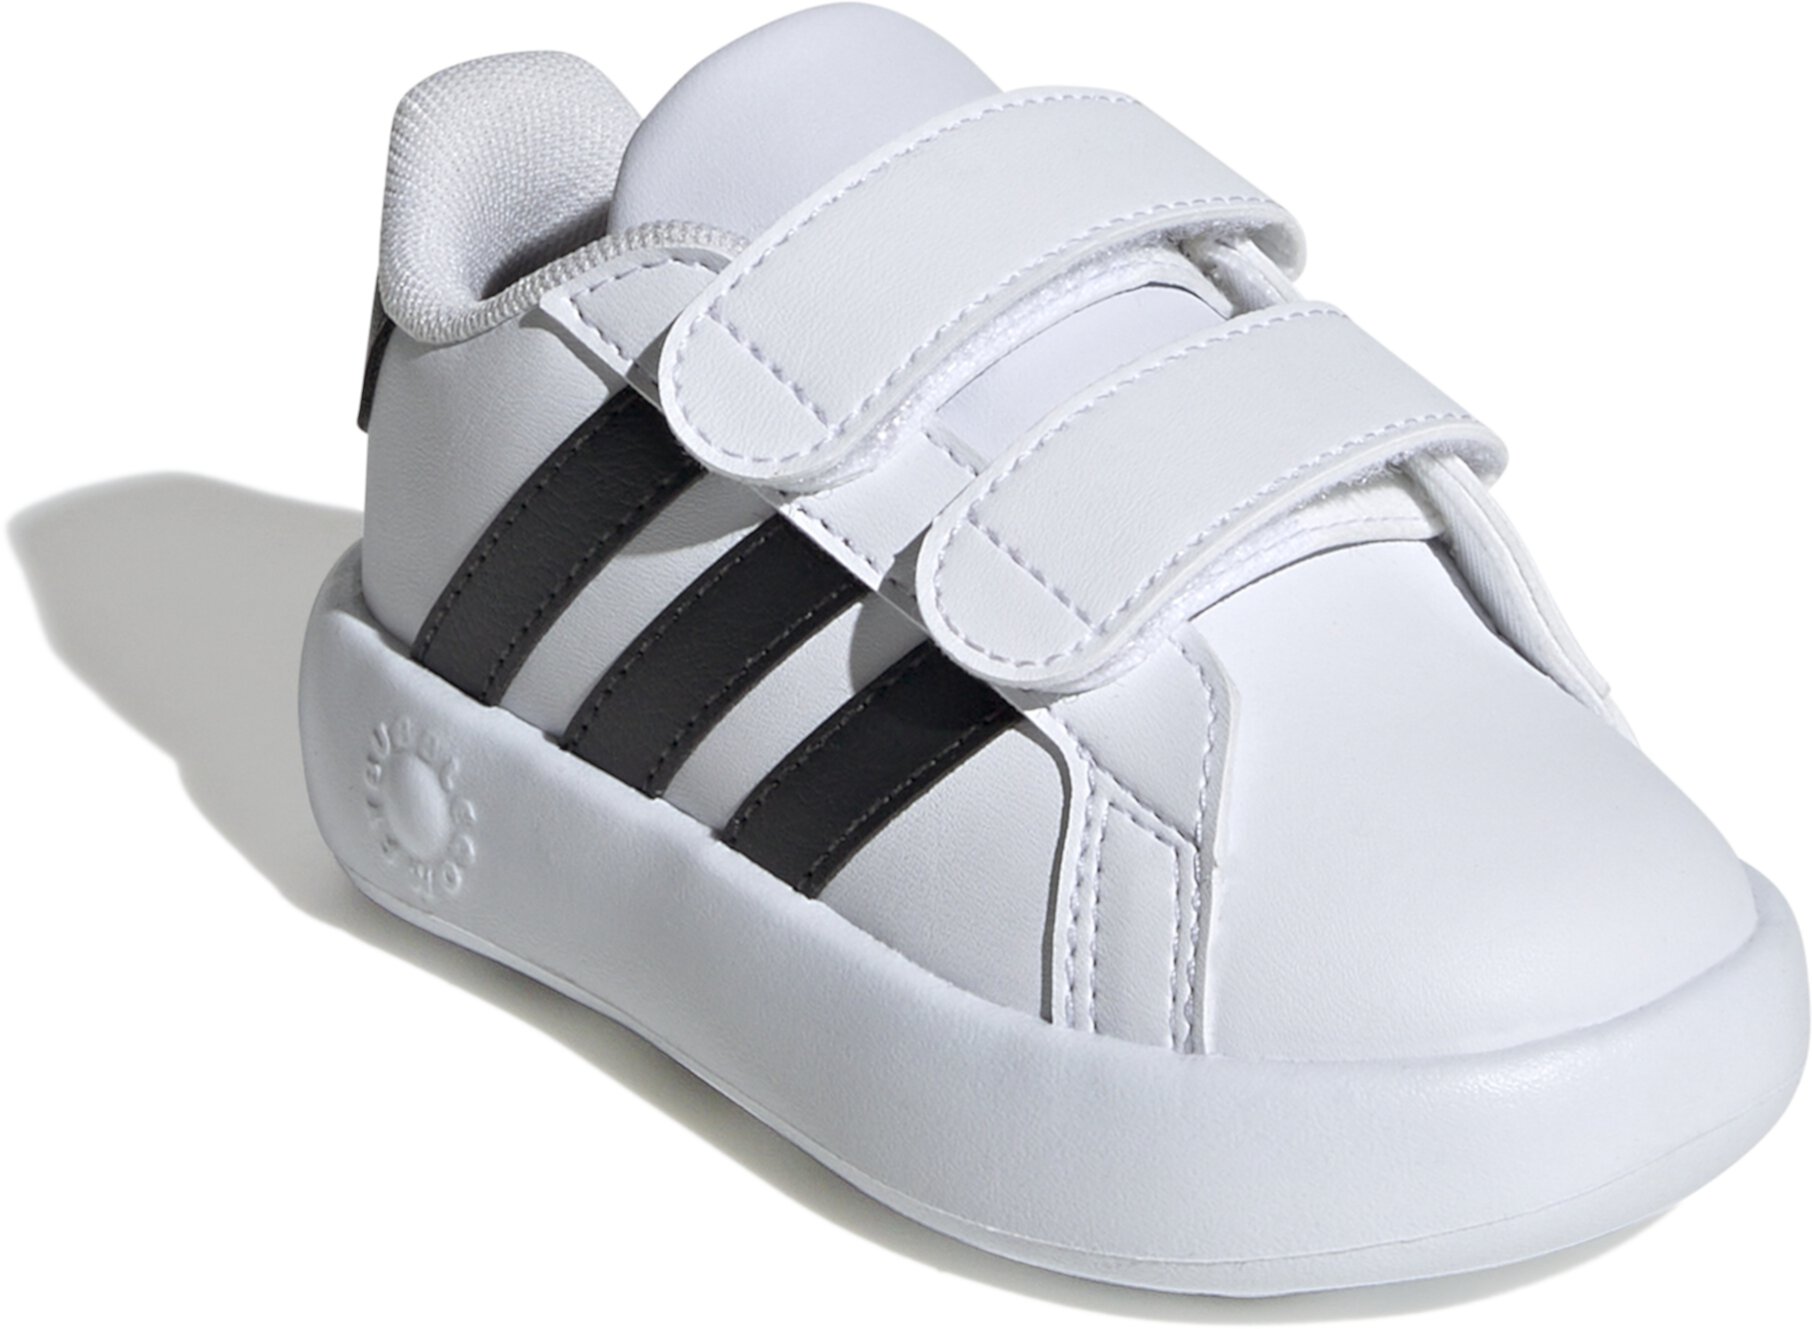 Гранд Корт 2.0 (Малыш) Adidas